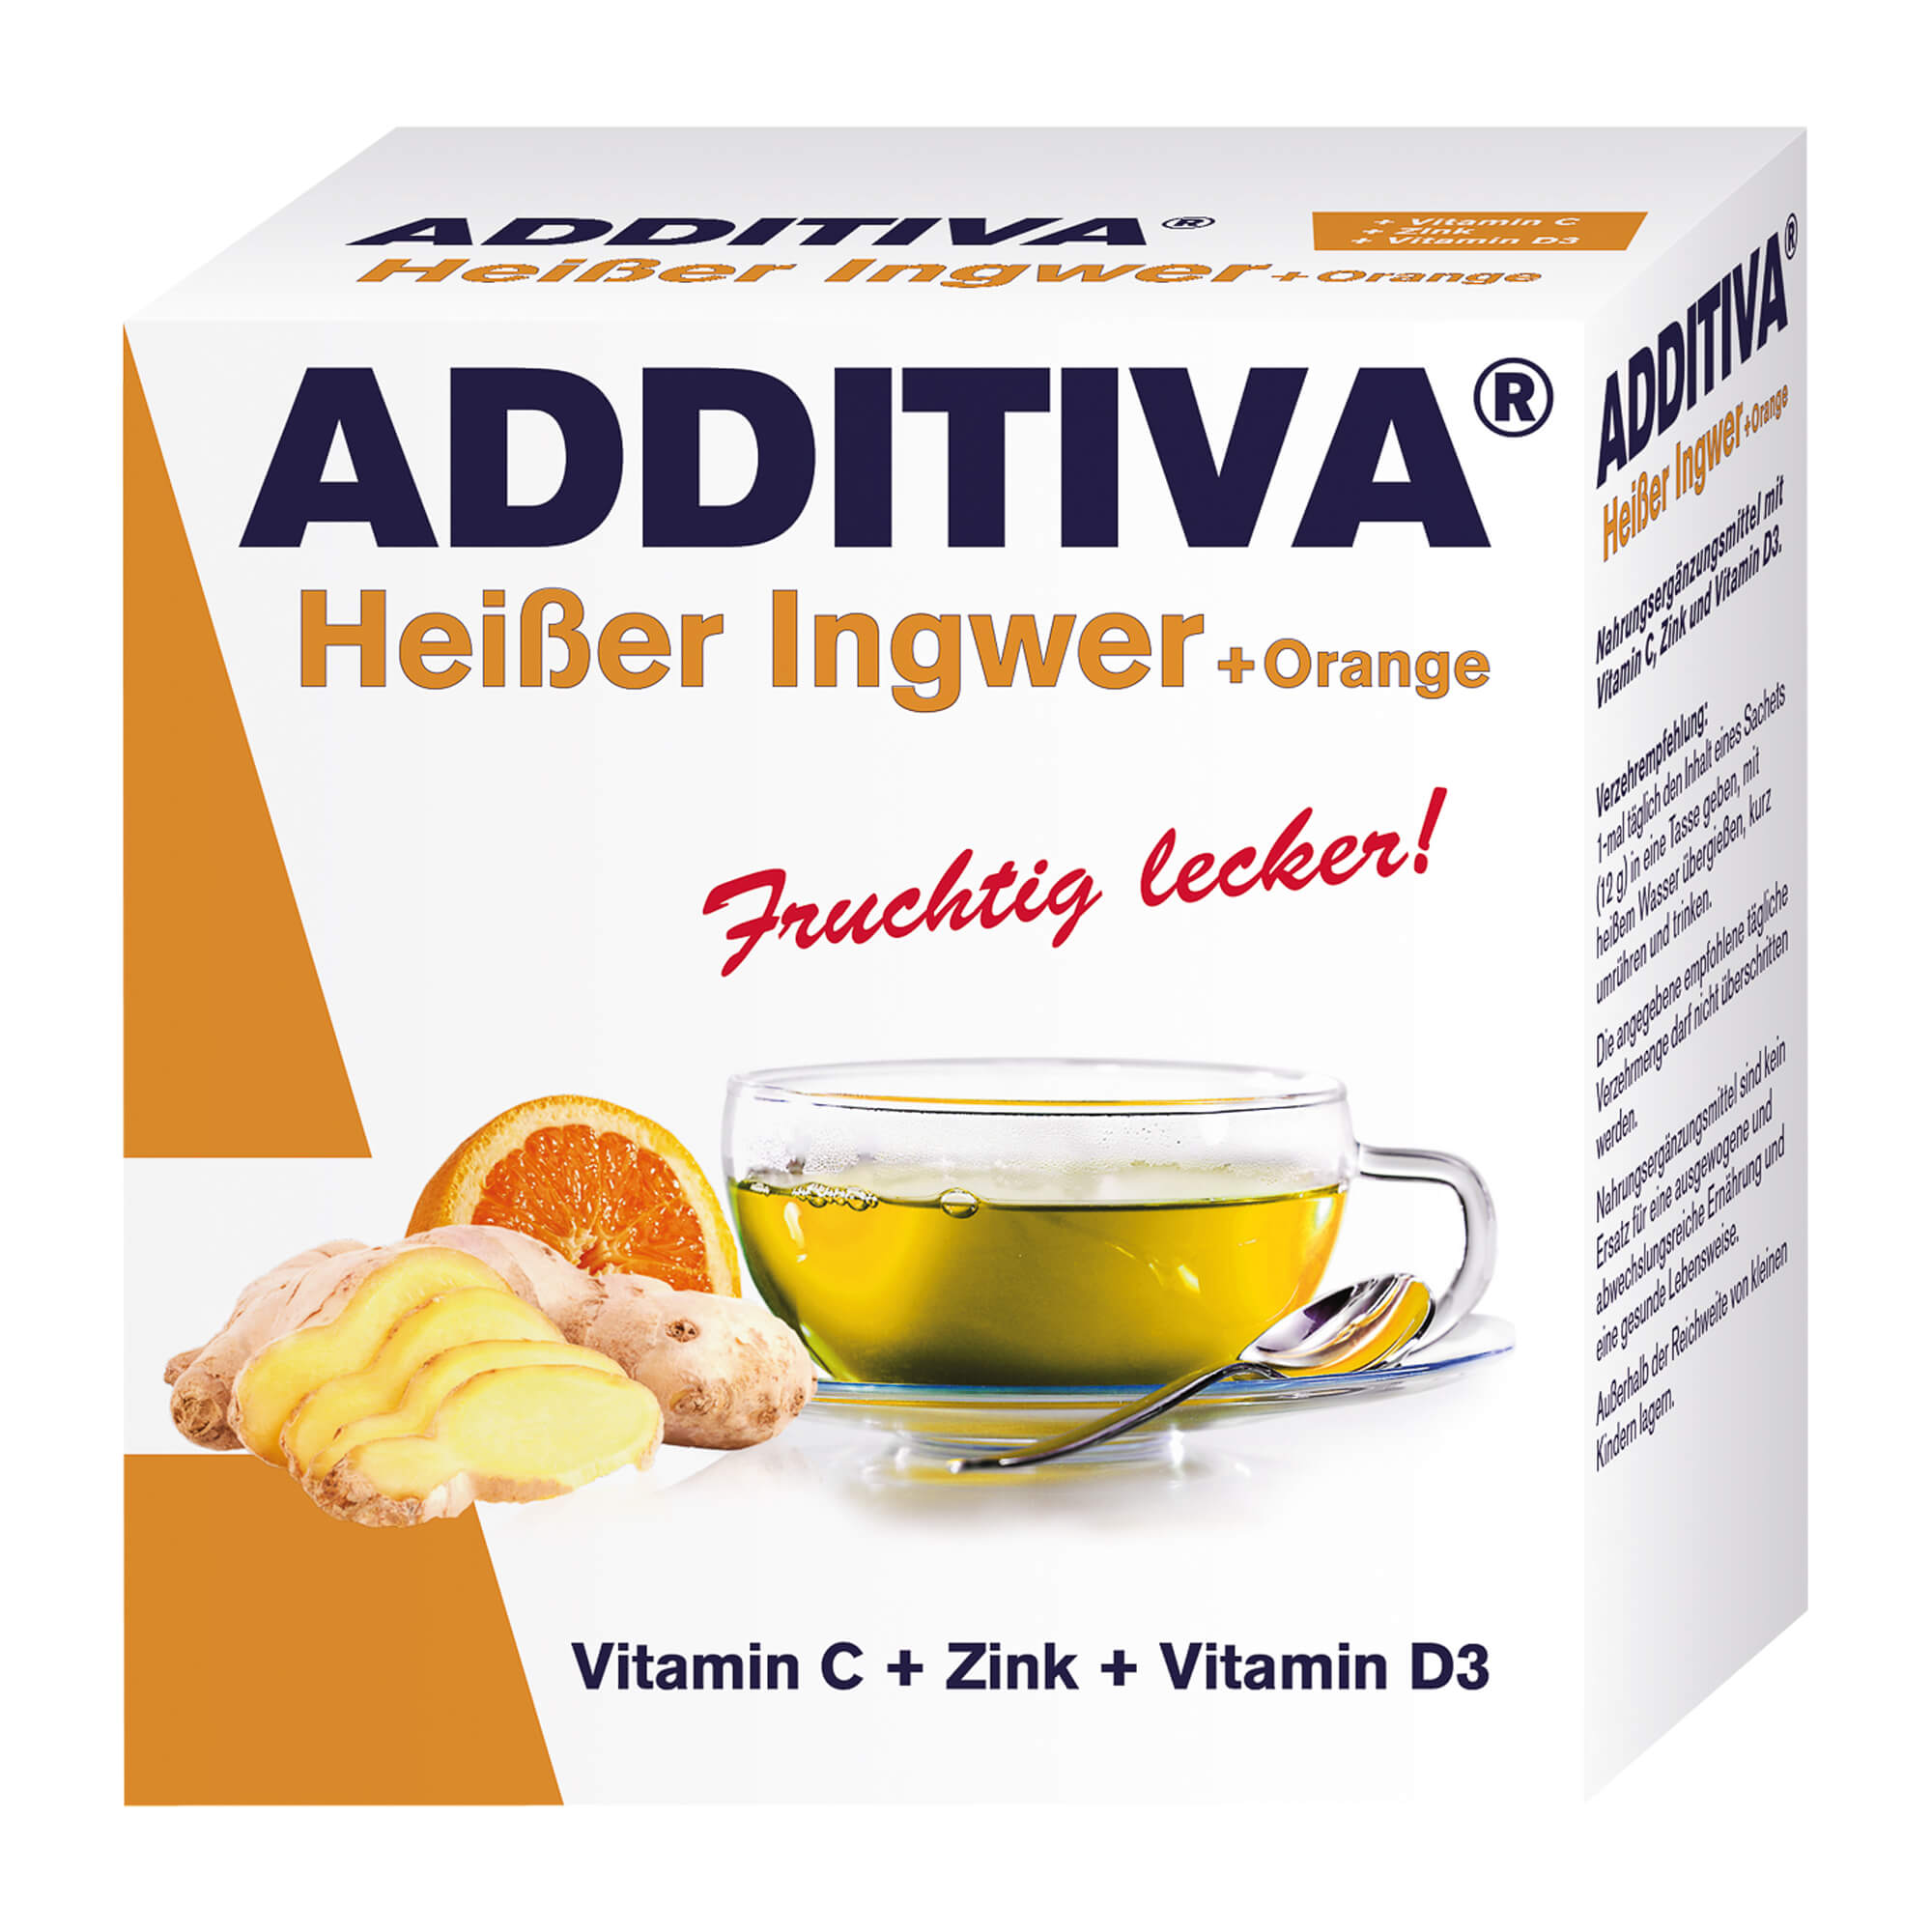 Nahrungsergänzungsmittel mit Vitamin C, Zink und Vitamin D3. Mit Inger-Orangen-Geschmack.